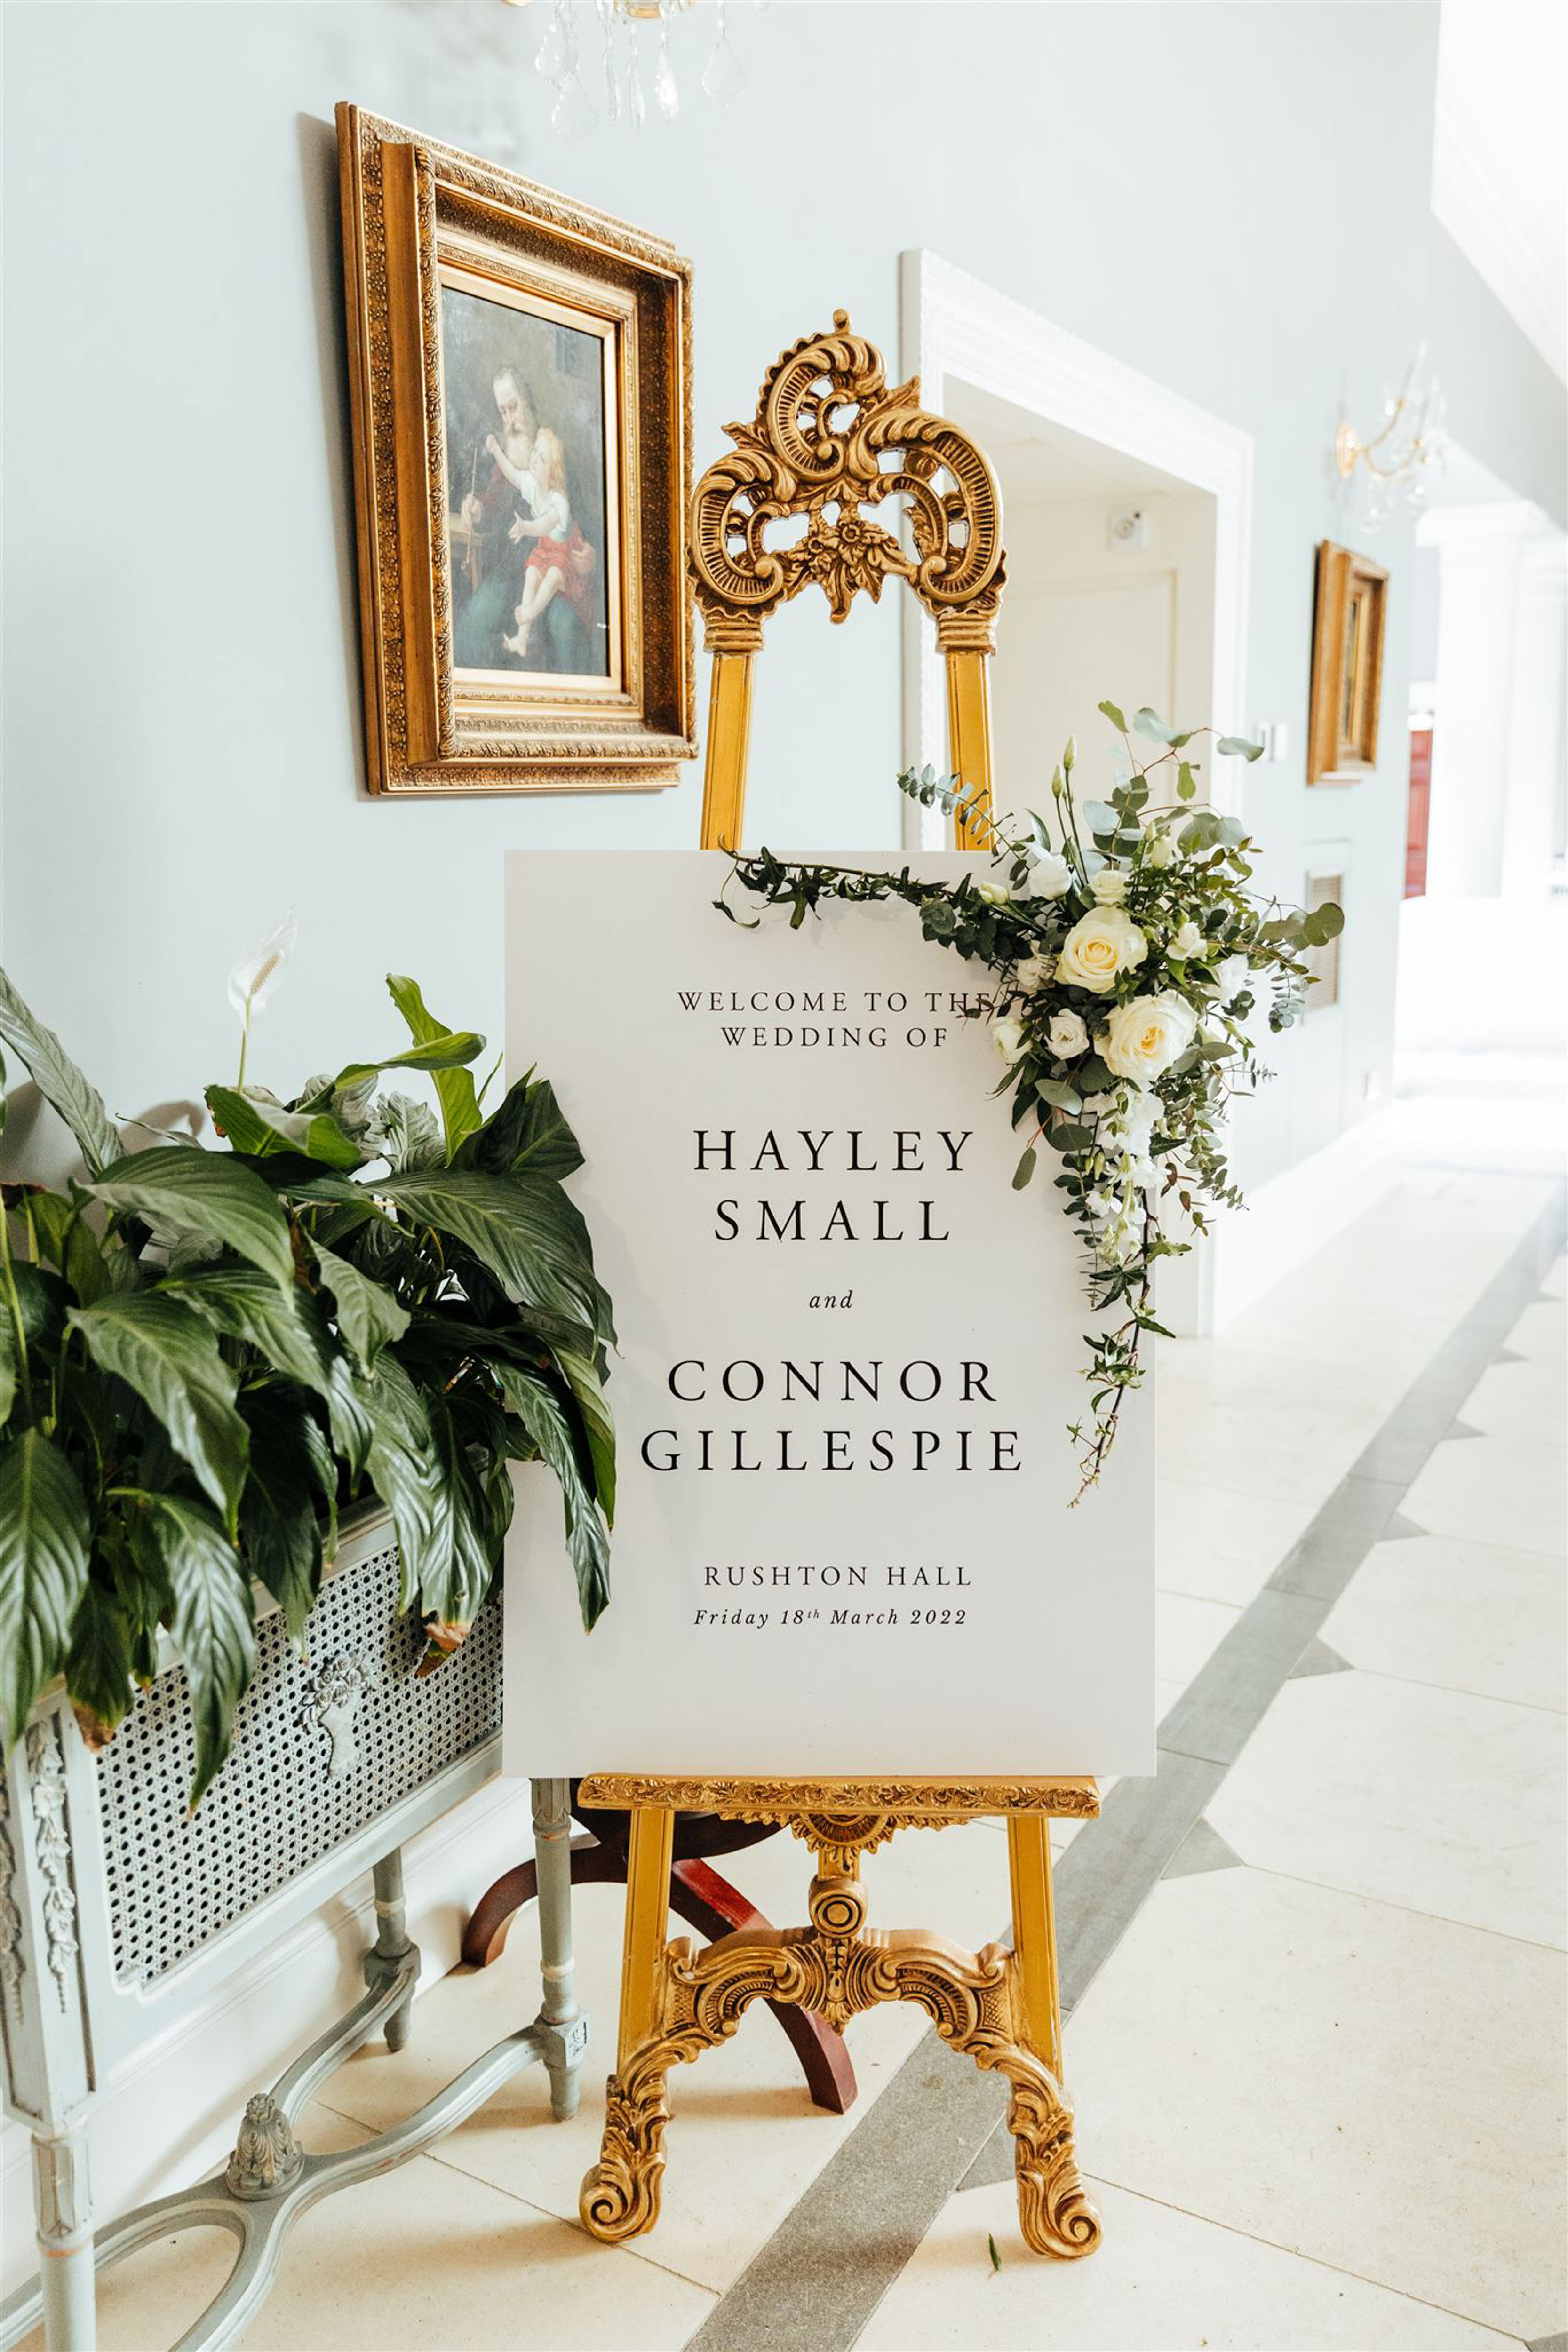 Rushton Hall Orangery Ceremony Set Up. Documentary UK Wedding Photographer. Aimee Joy Photography.